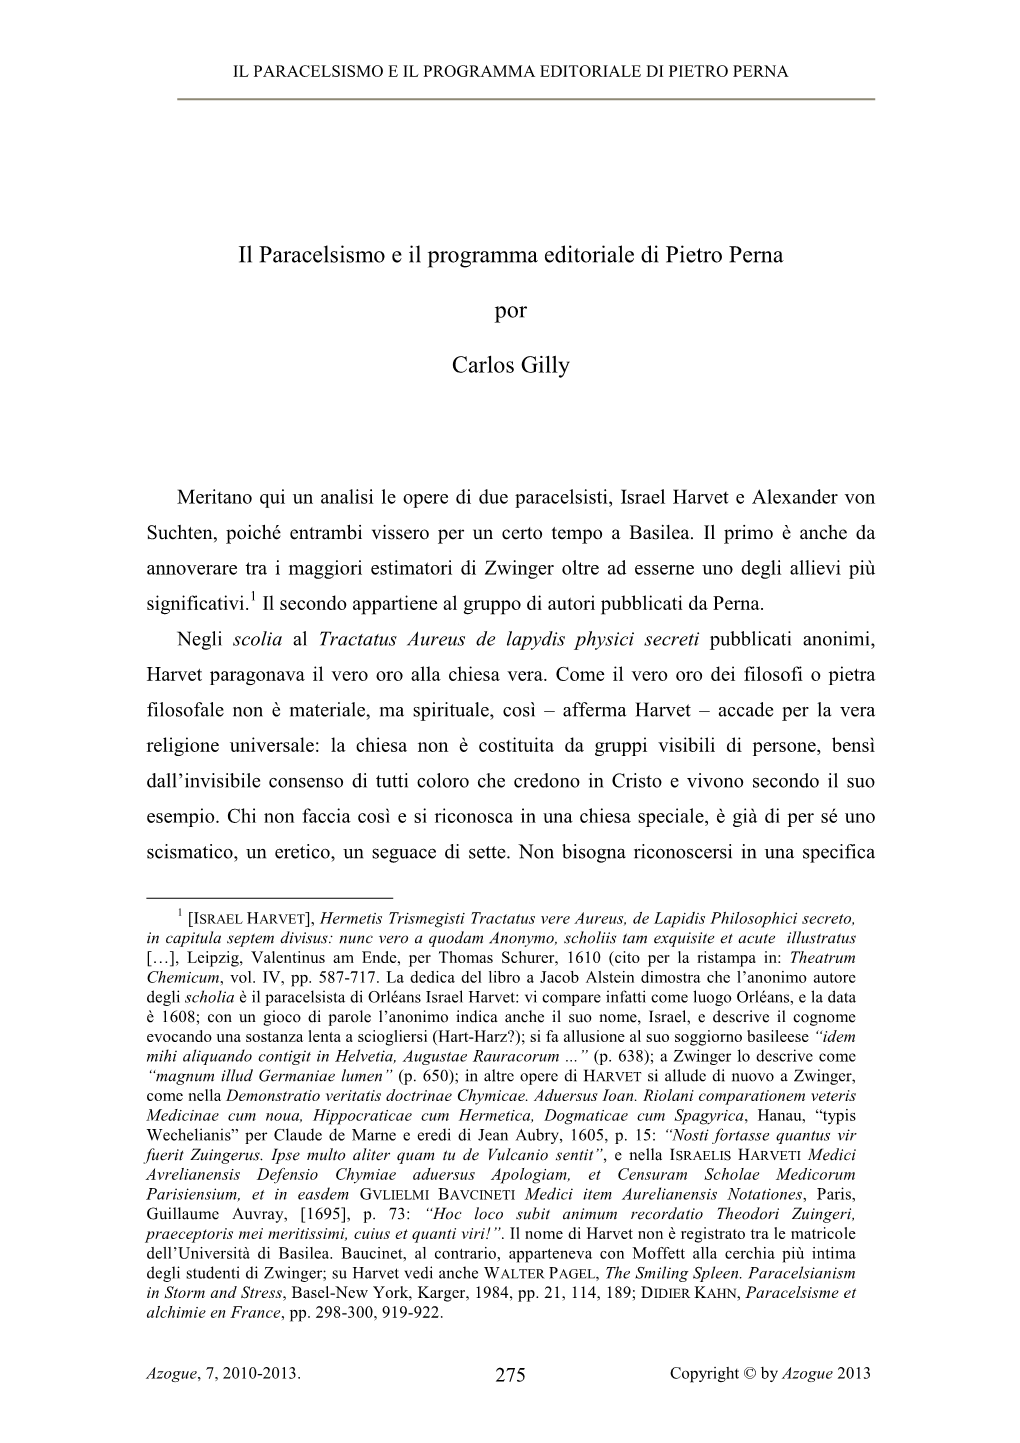 Il Paracelsismo E Il Programma Editoriale Di Pietro Perna Por Carlos